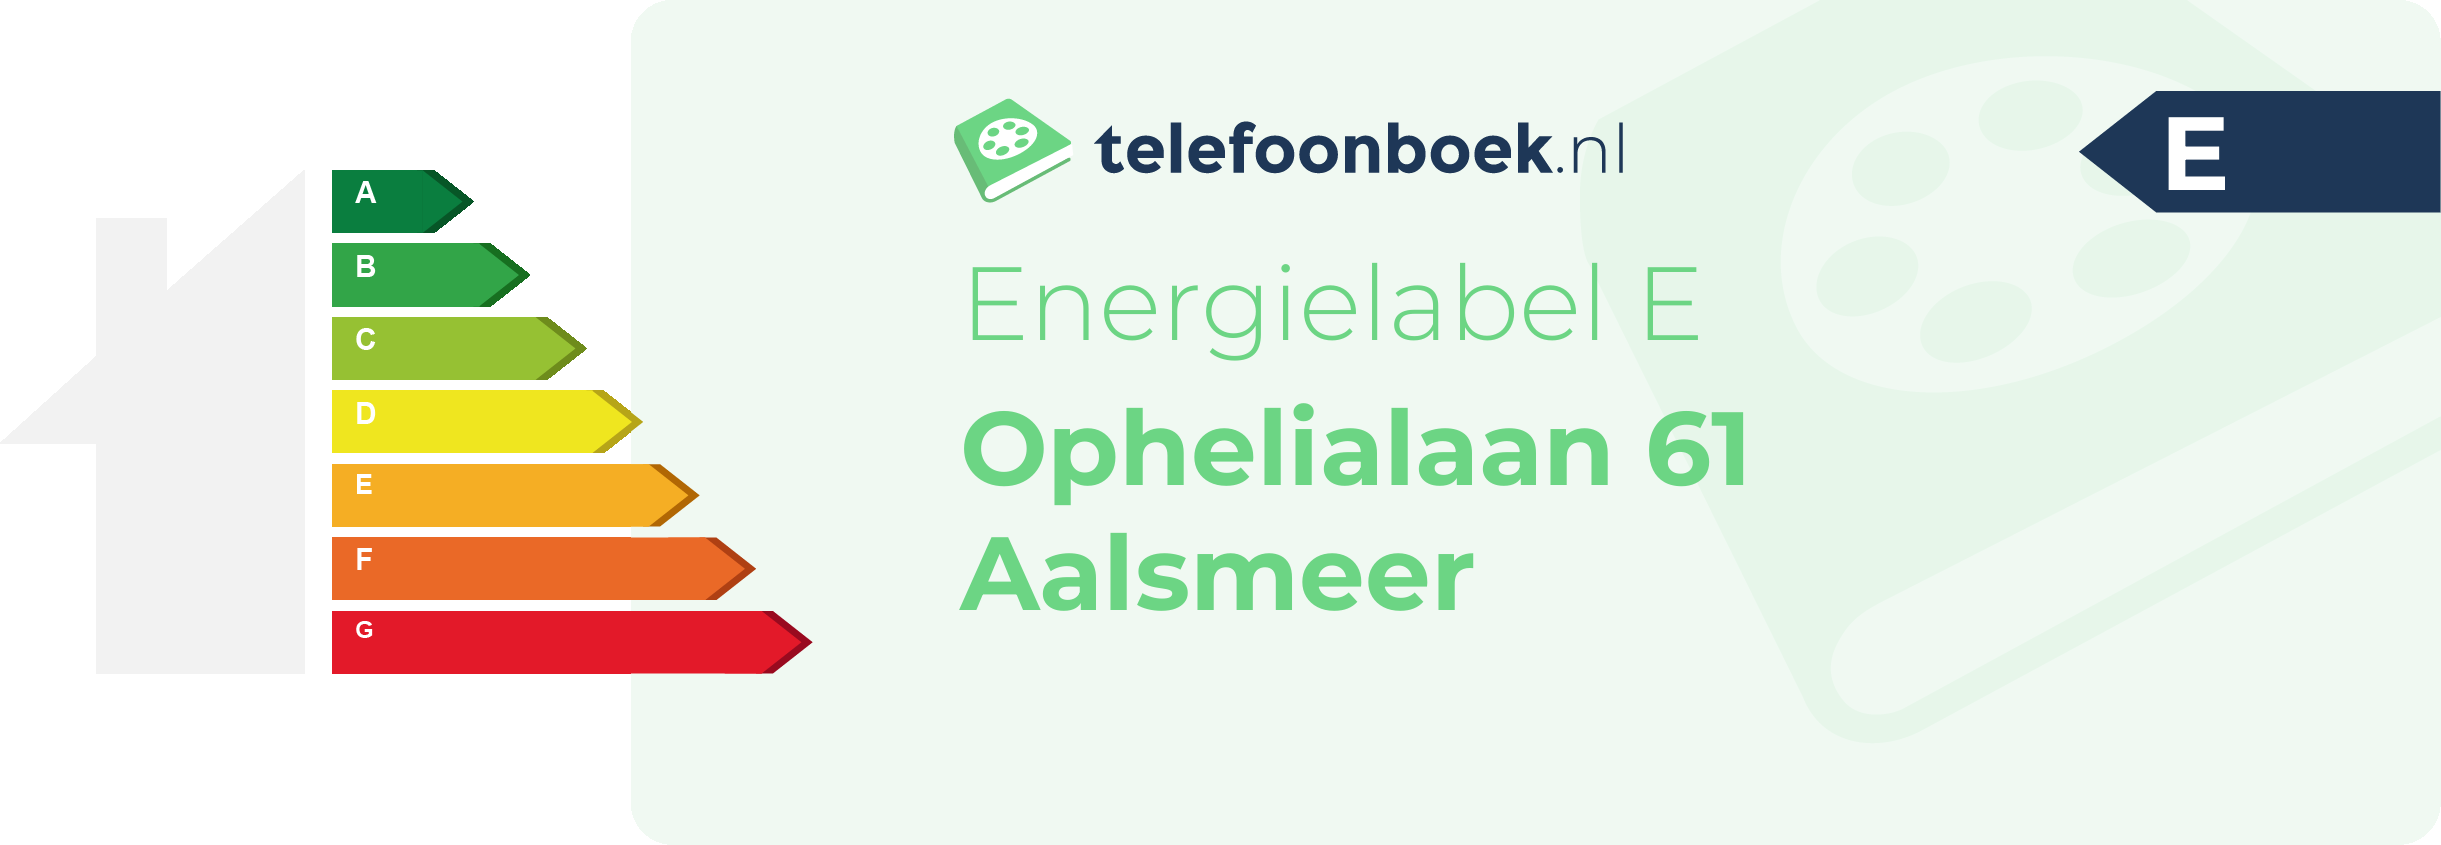 Energielabel Ophelialaan 61 Aalsmeer